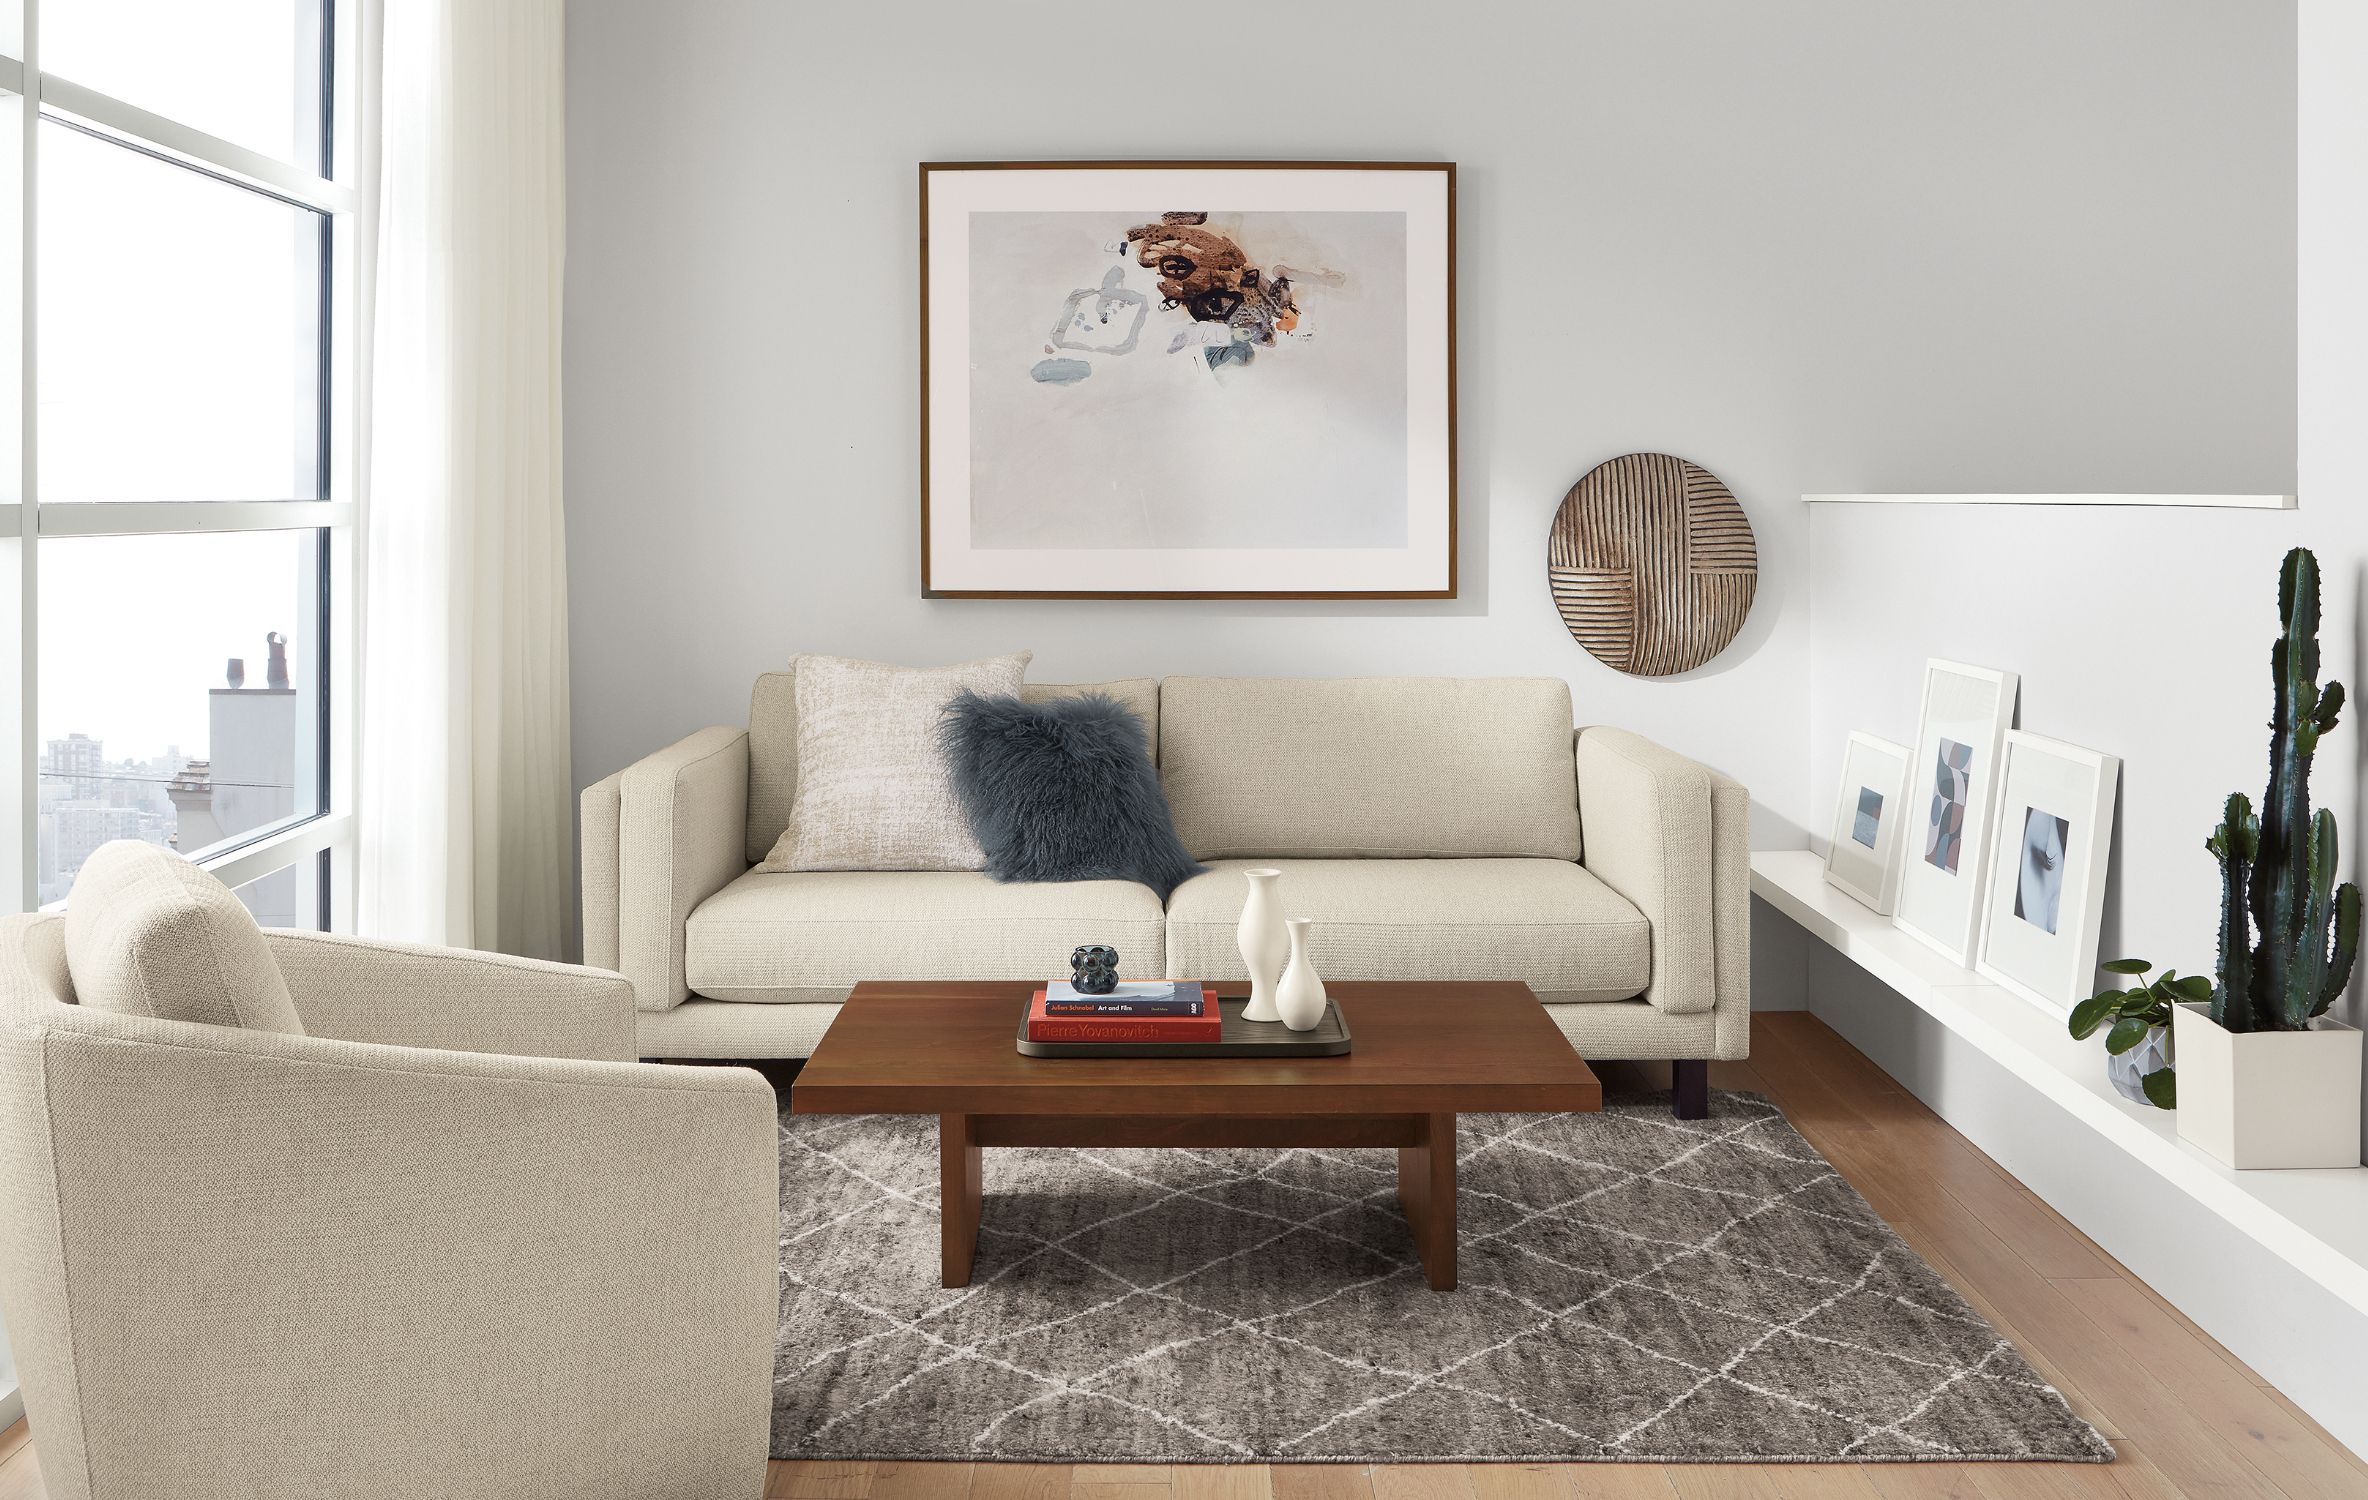 Gợi ý bố trí ghế sofa cho phòng khách nhỏ: Với những gợi ý về bố trí ghế sofa phù hợp cho phòng khách nhỏ, bạn sẽ tìm thấy cách để tối ưu hóa diện tích và tạo không gian sống thoải mái như mong muốn. Bạn có thể tham khảo những thiết kế phòng khách mới nhất và chọn ghế sofa phù hợp or bạn hoặc tận dụng hết mọi không gian để tối ưu hóa không gian trong nhà của bạn.